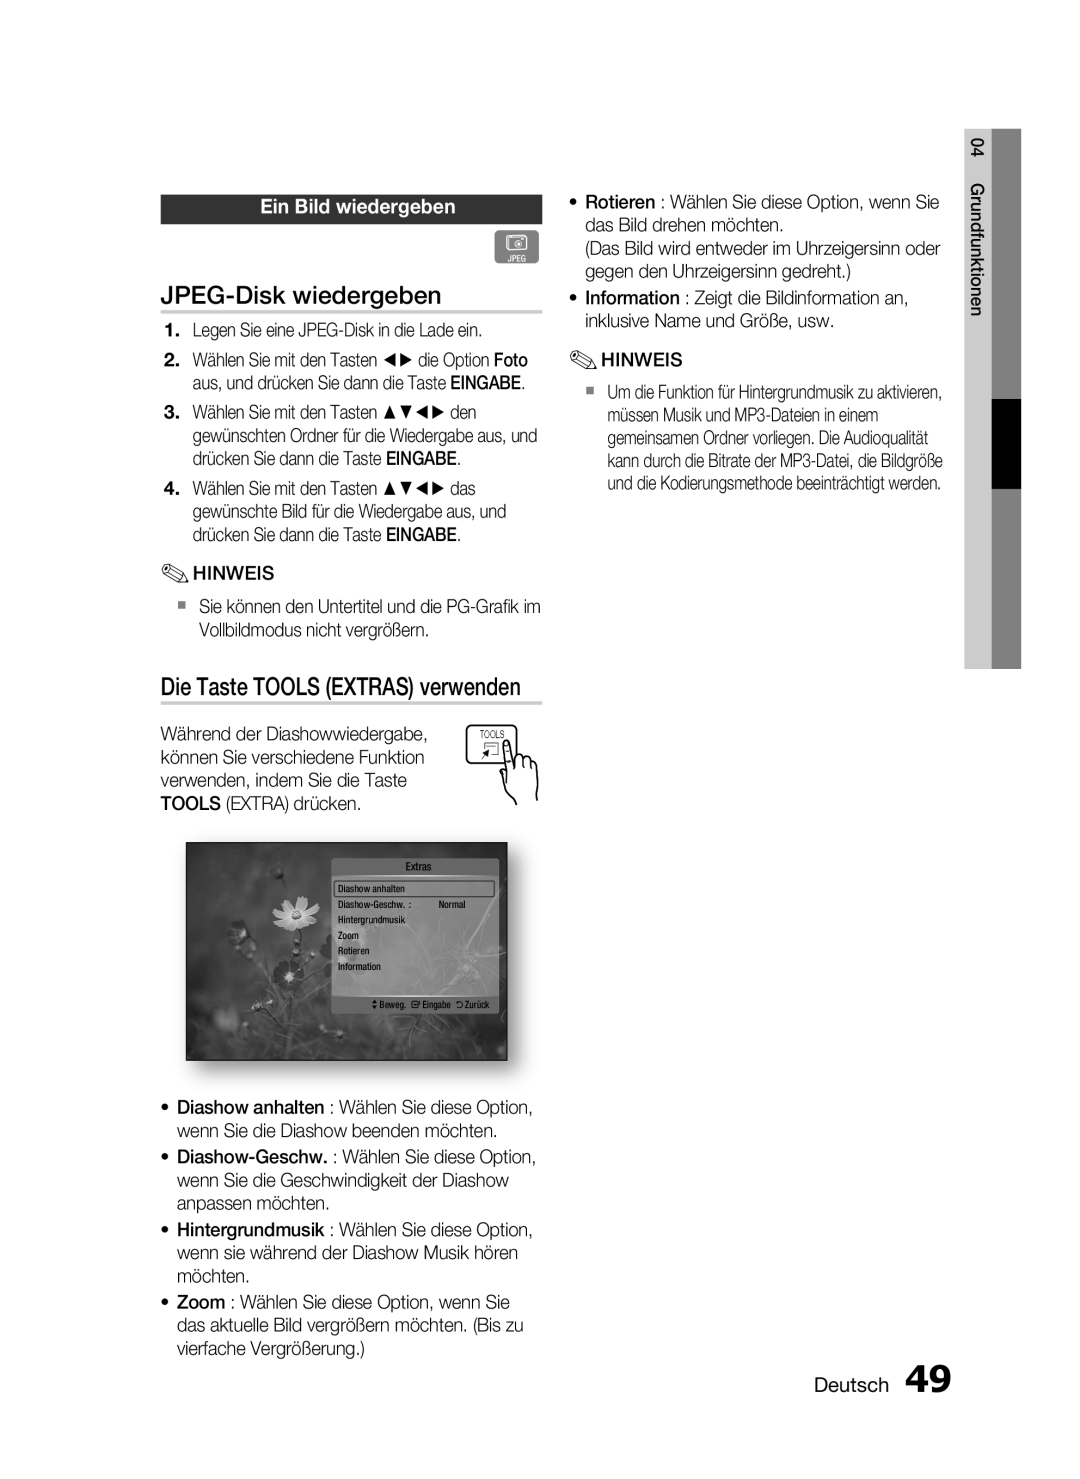 Samsung HT-C6200/XEF manual JPEG-Disk wiedergeben, Die Taste TOOLS EXTRAS verwenden, Ein Bild wiedergeben, Deutsch 